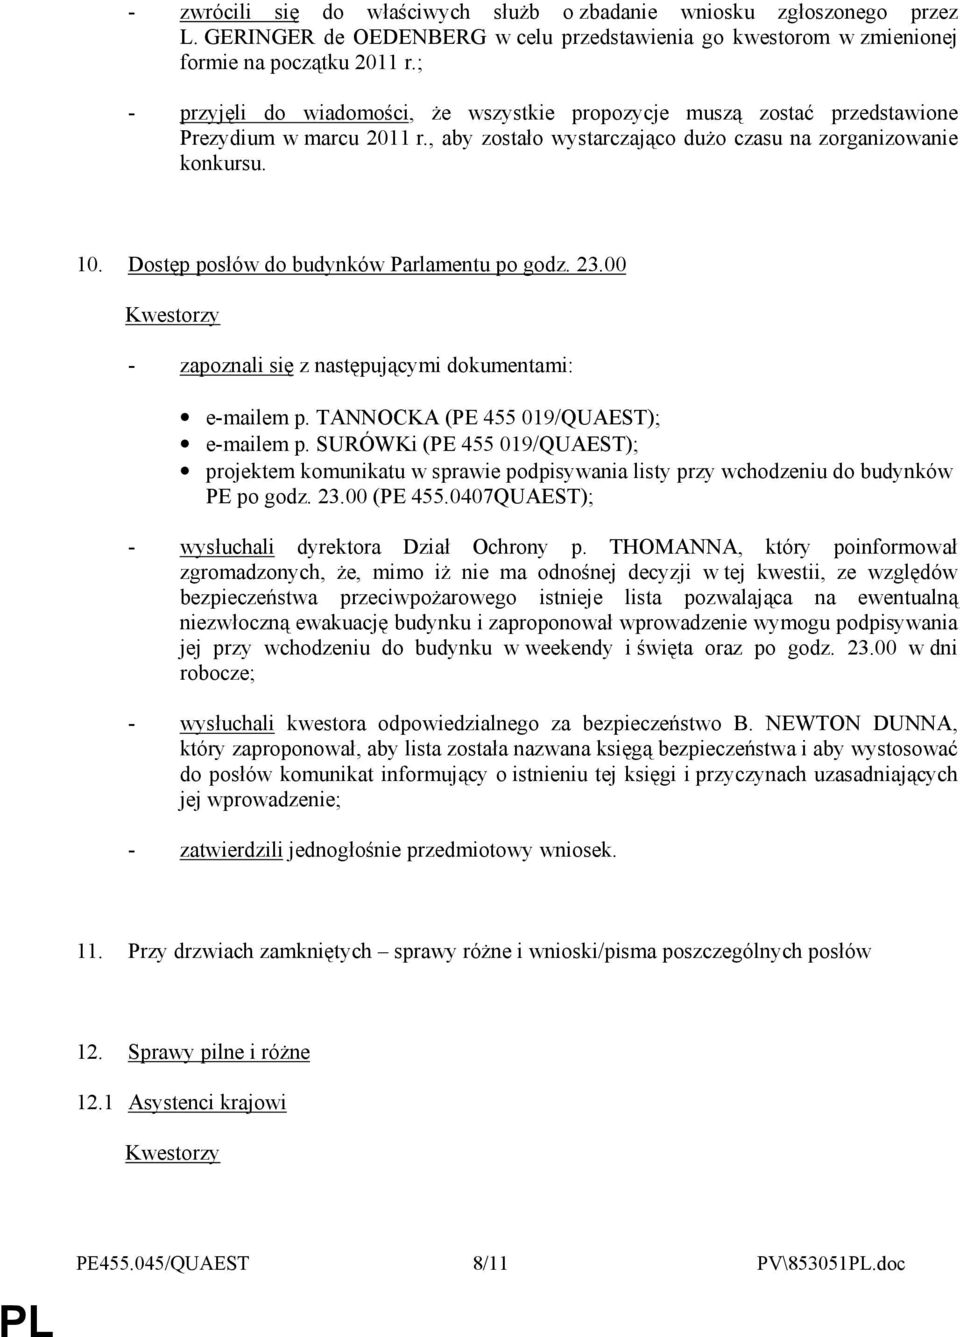 Dostęp posłów do budynków Parlamentu po godz. 23.00 - zapoznali się z następującymi dokumentami: e-mailem p. TANNOCKA (PE 455 019/QUAEST); e-mailem p.